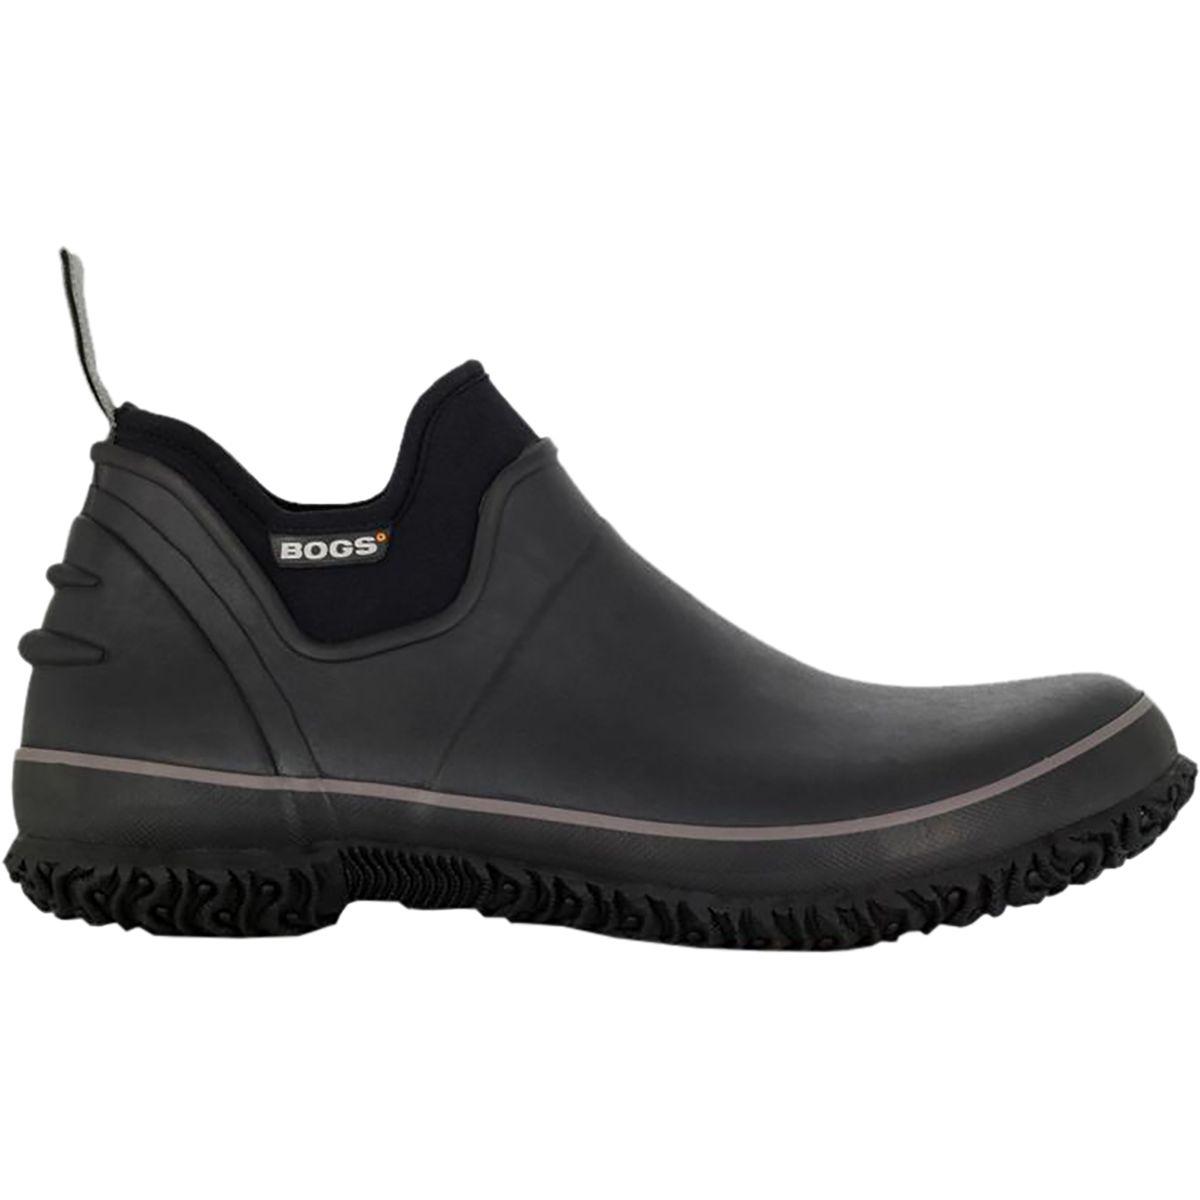 Bogs Rubber Urban Farmer Shoe in Black for Men - Lyst